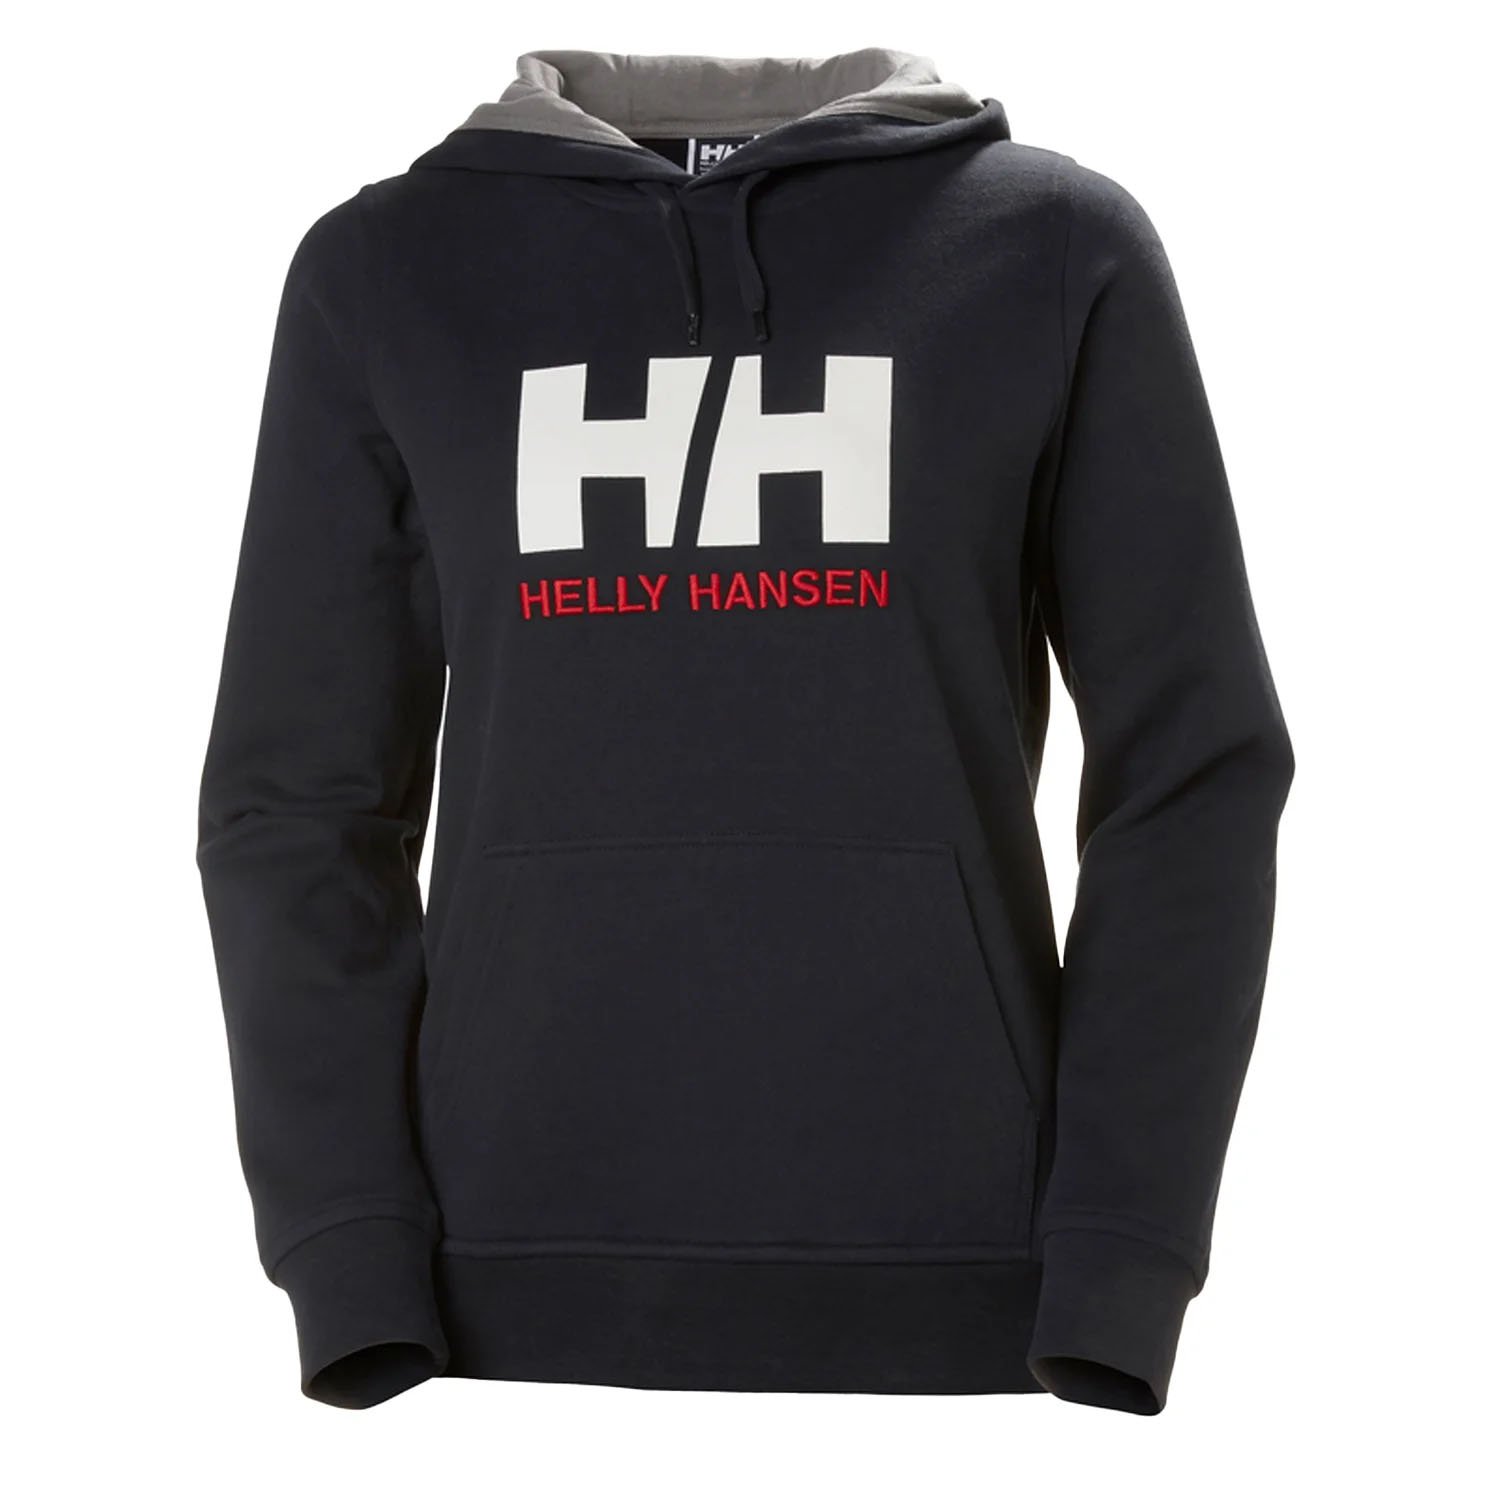 Helly Hansen Logo Kadın Sweatshirt - LACİVERT - 1